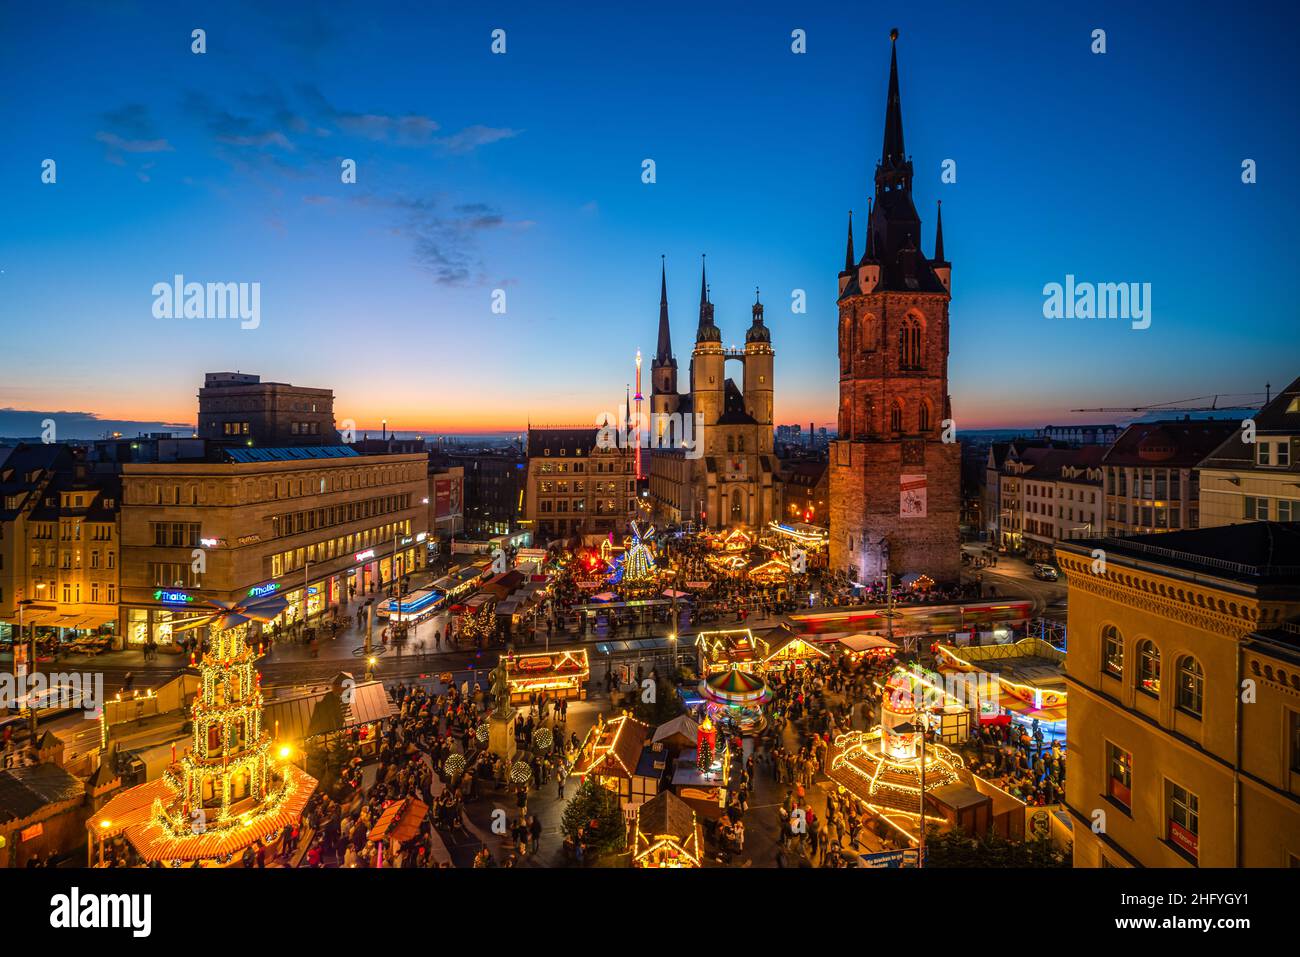 Weihnachtsmarkt in Halle an der Saale von oben mit historischer Stadtansicht, Roter Turm, Marktkirche und Sonnenuntergang Foto Stock